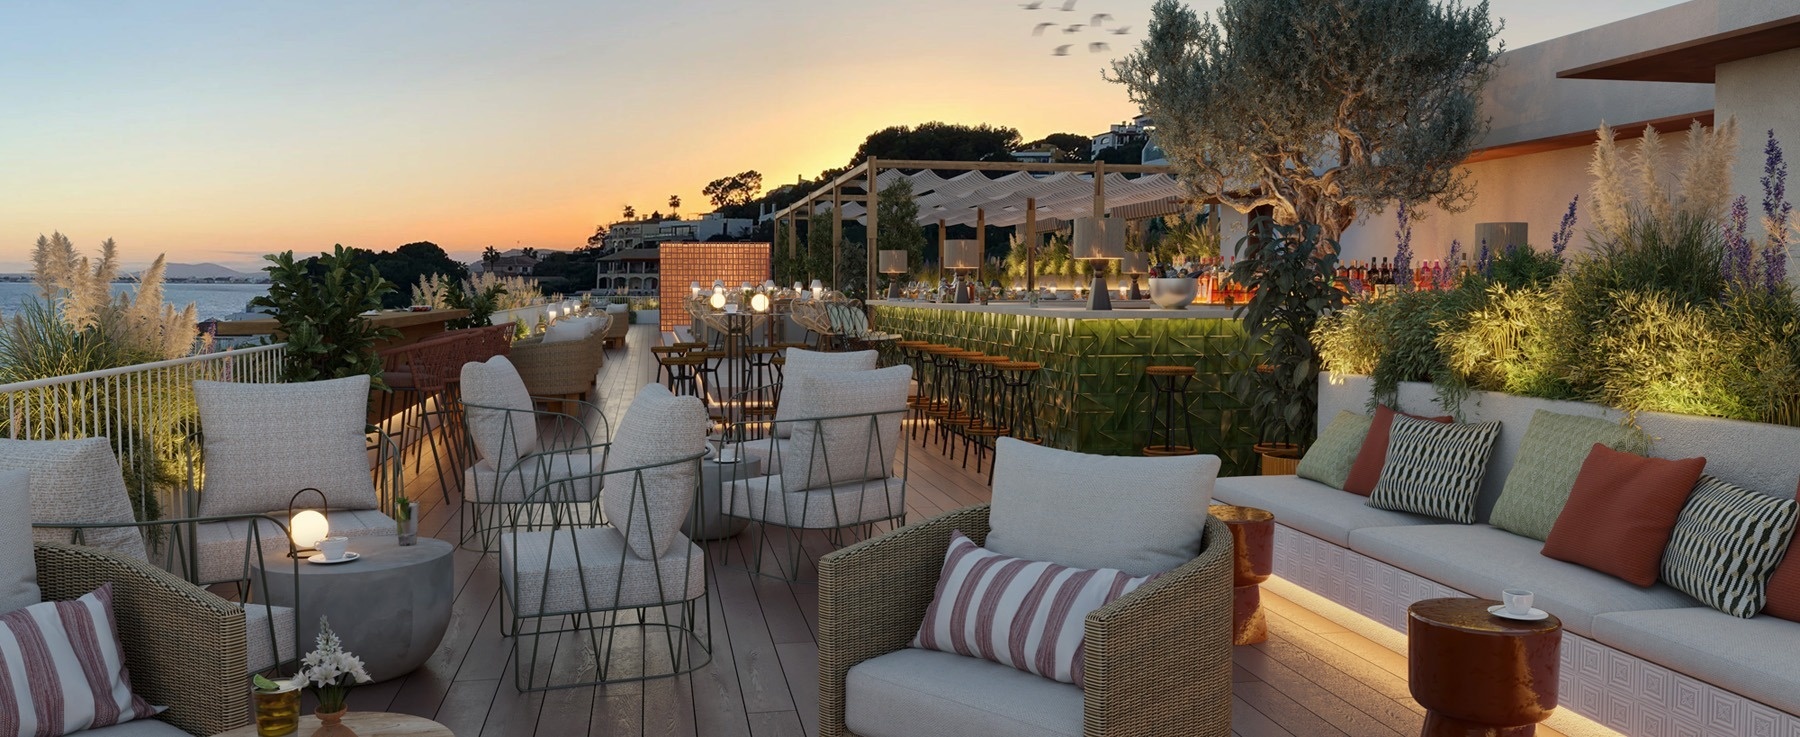 eine Terrasse mit vielen Stühlen und einer Bar